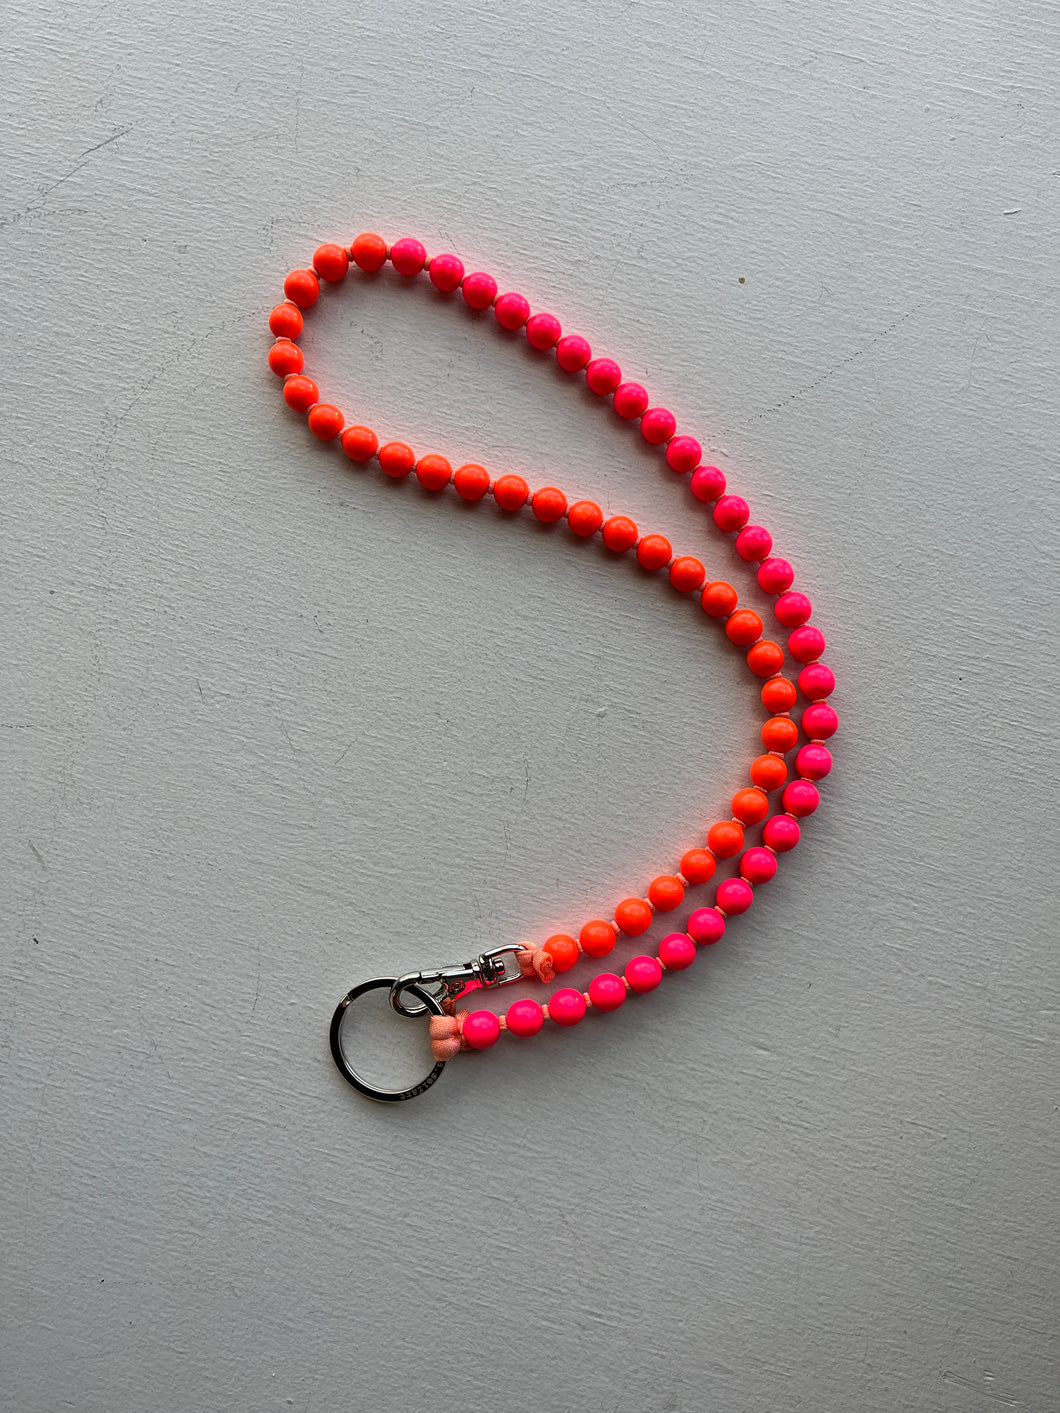 ina seifart - Perlen Long Keyholder - neon orange and pink beads, salmon ribbon